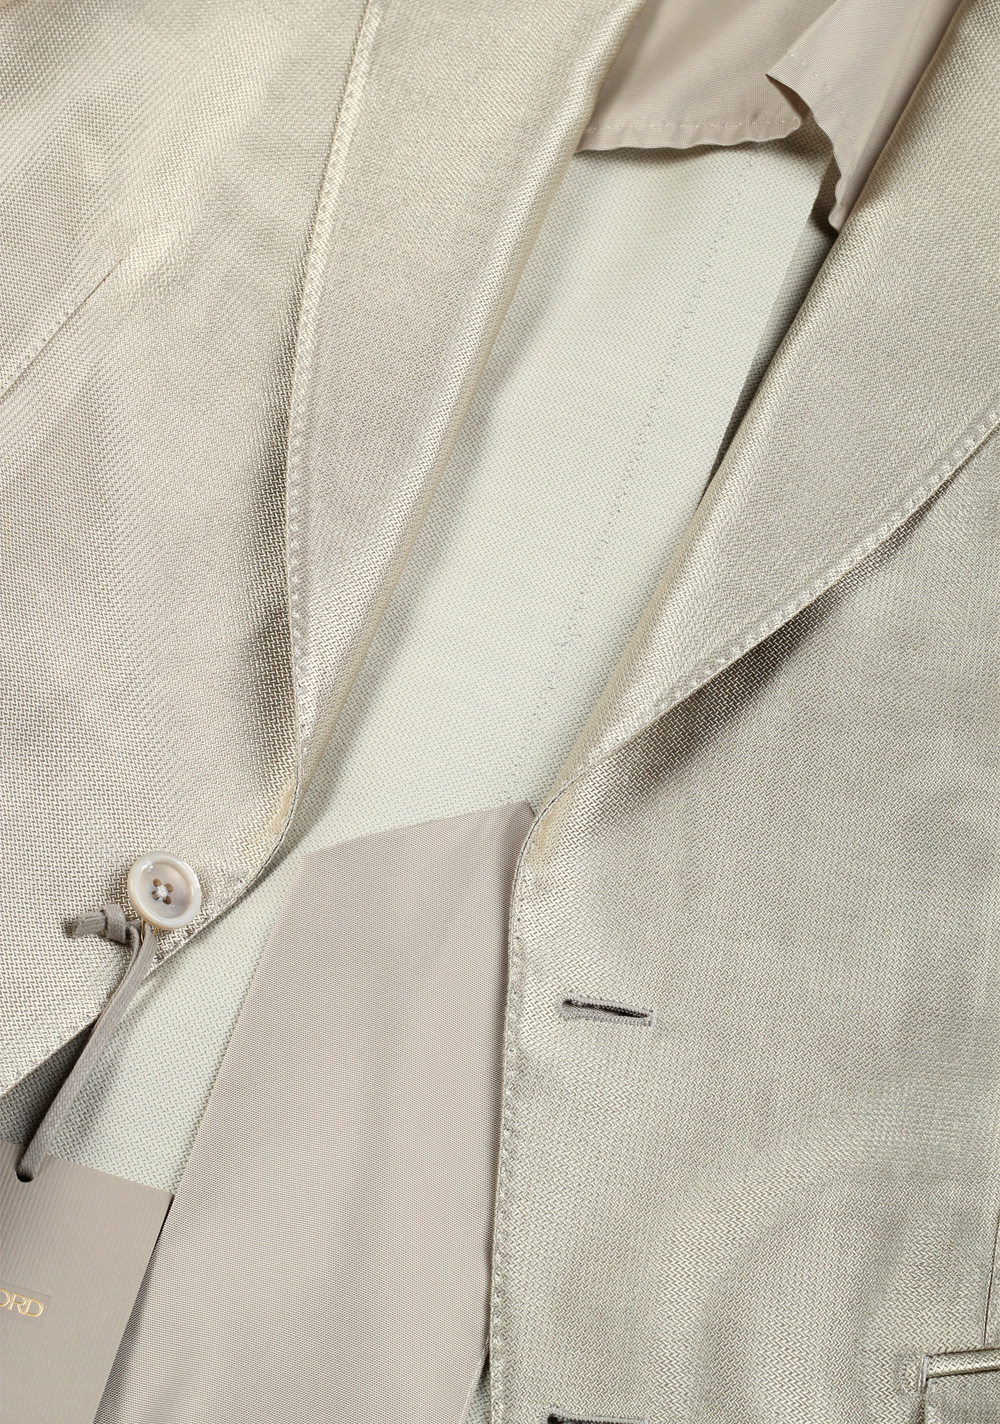 TOM FORD Atticus Silver Suit Size 46 / 36R U.S. | Costume Limité